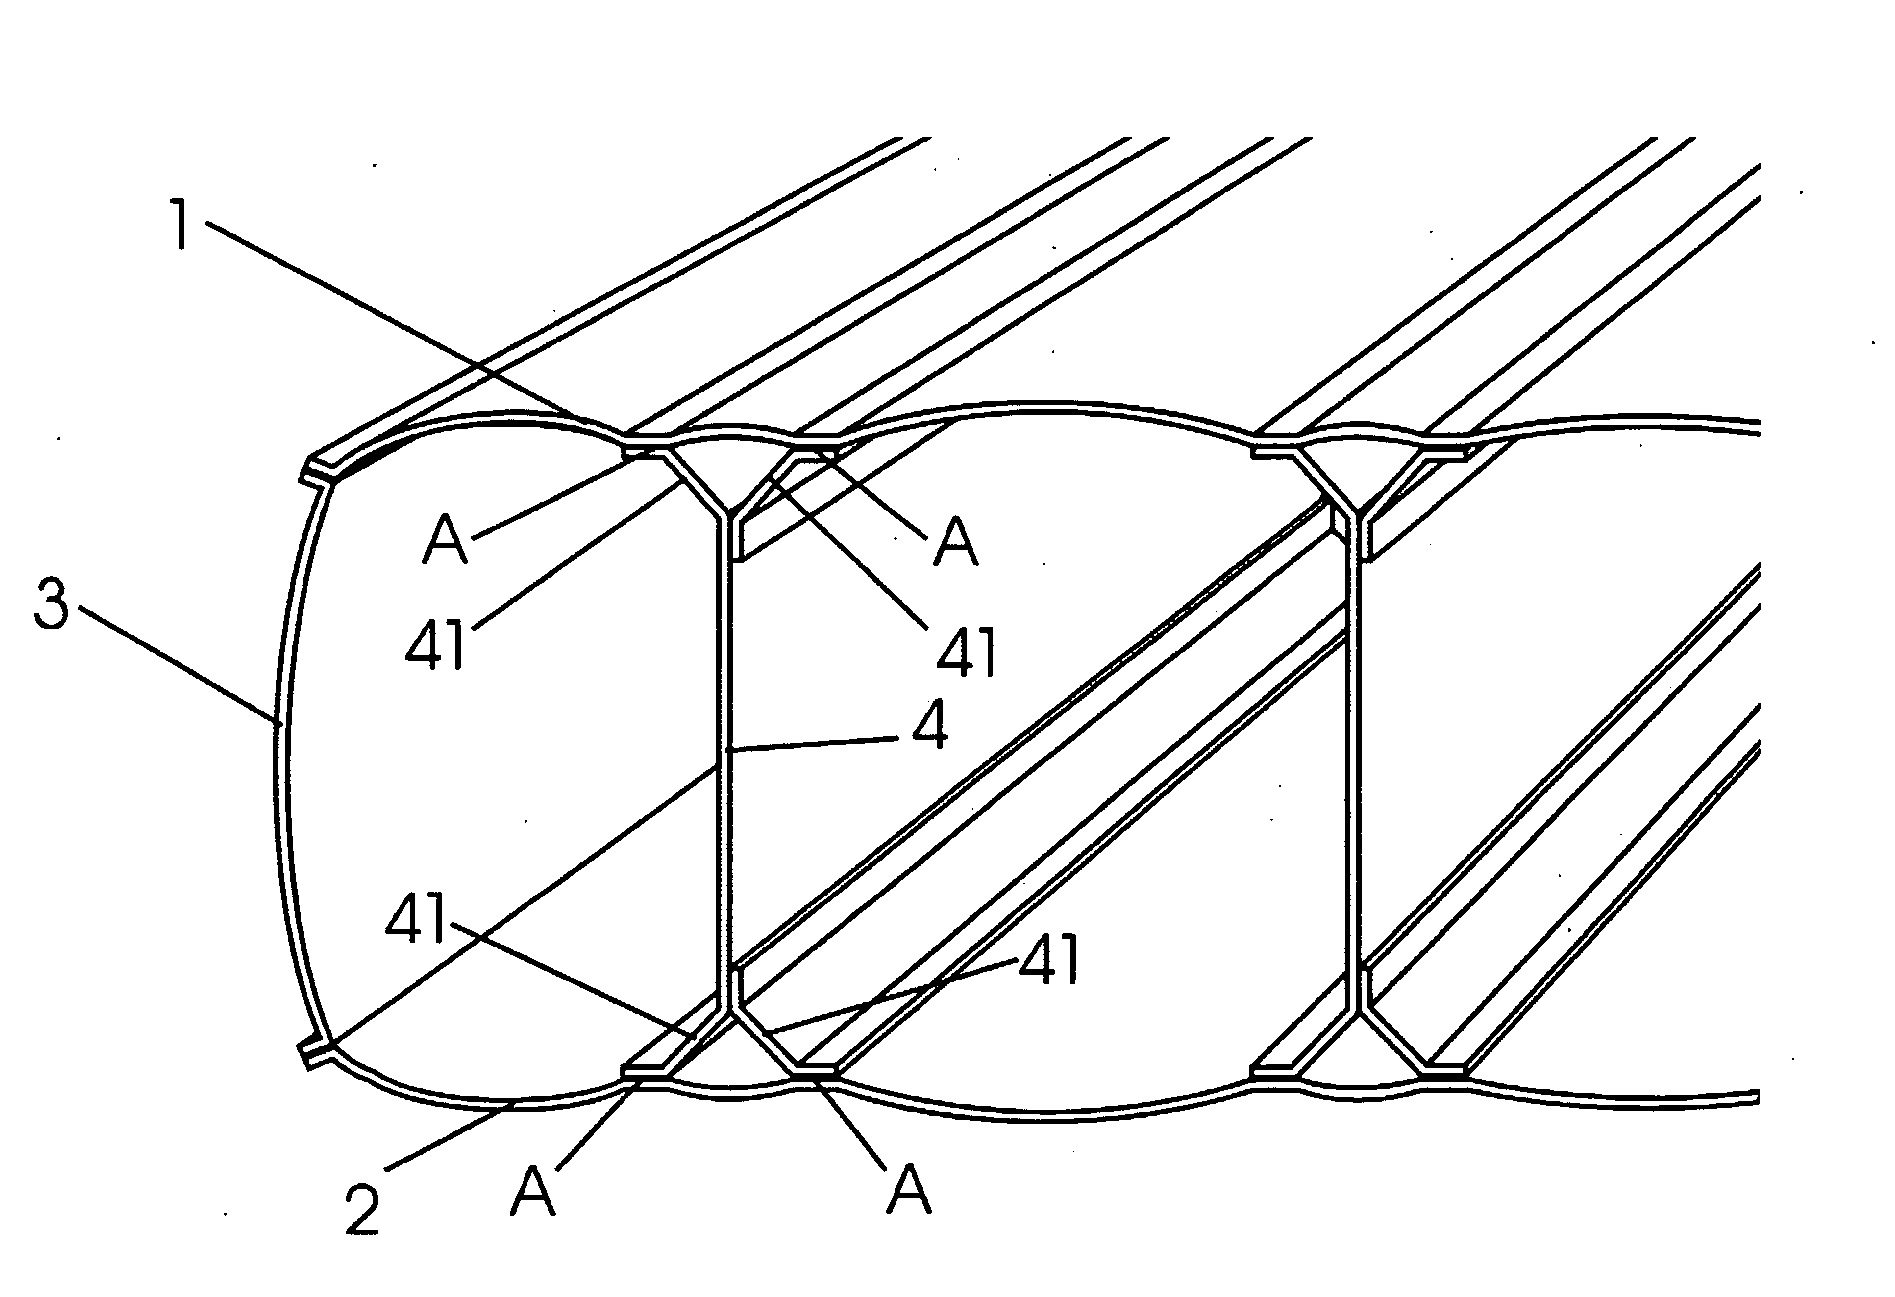 Beam construction of air mattress